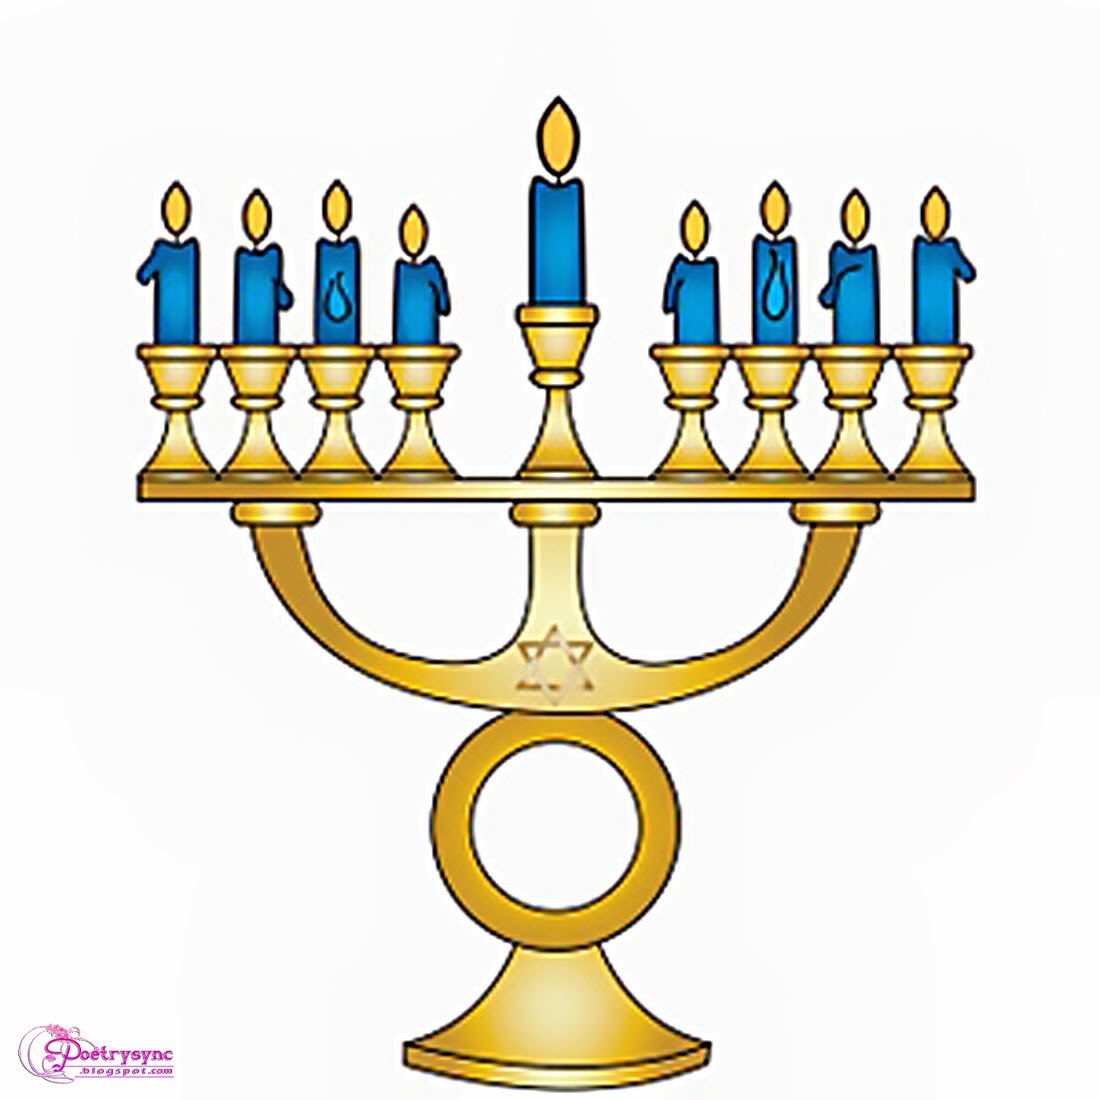 menorah clipart hanukkah candle